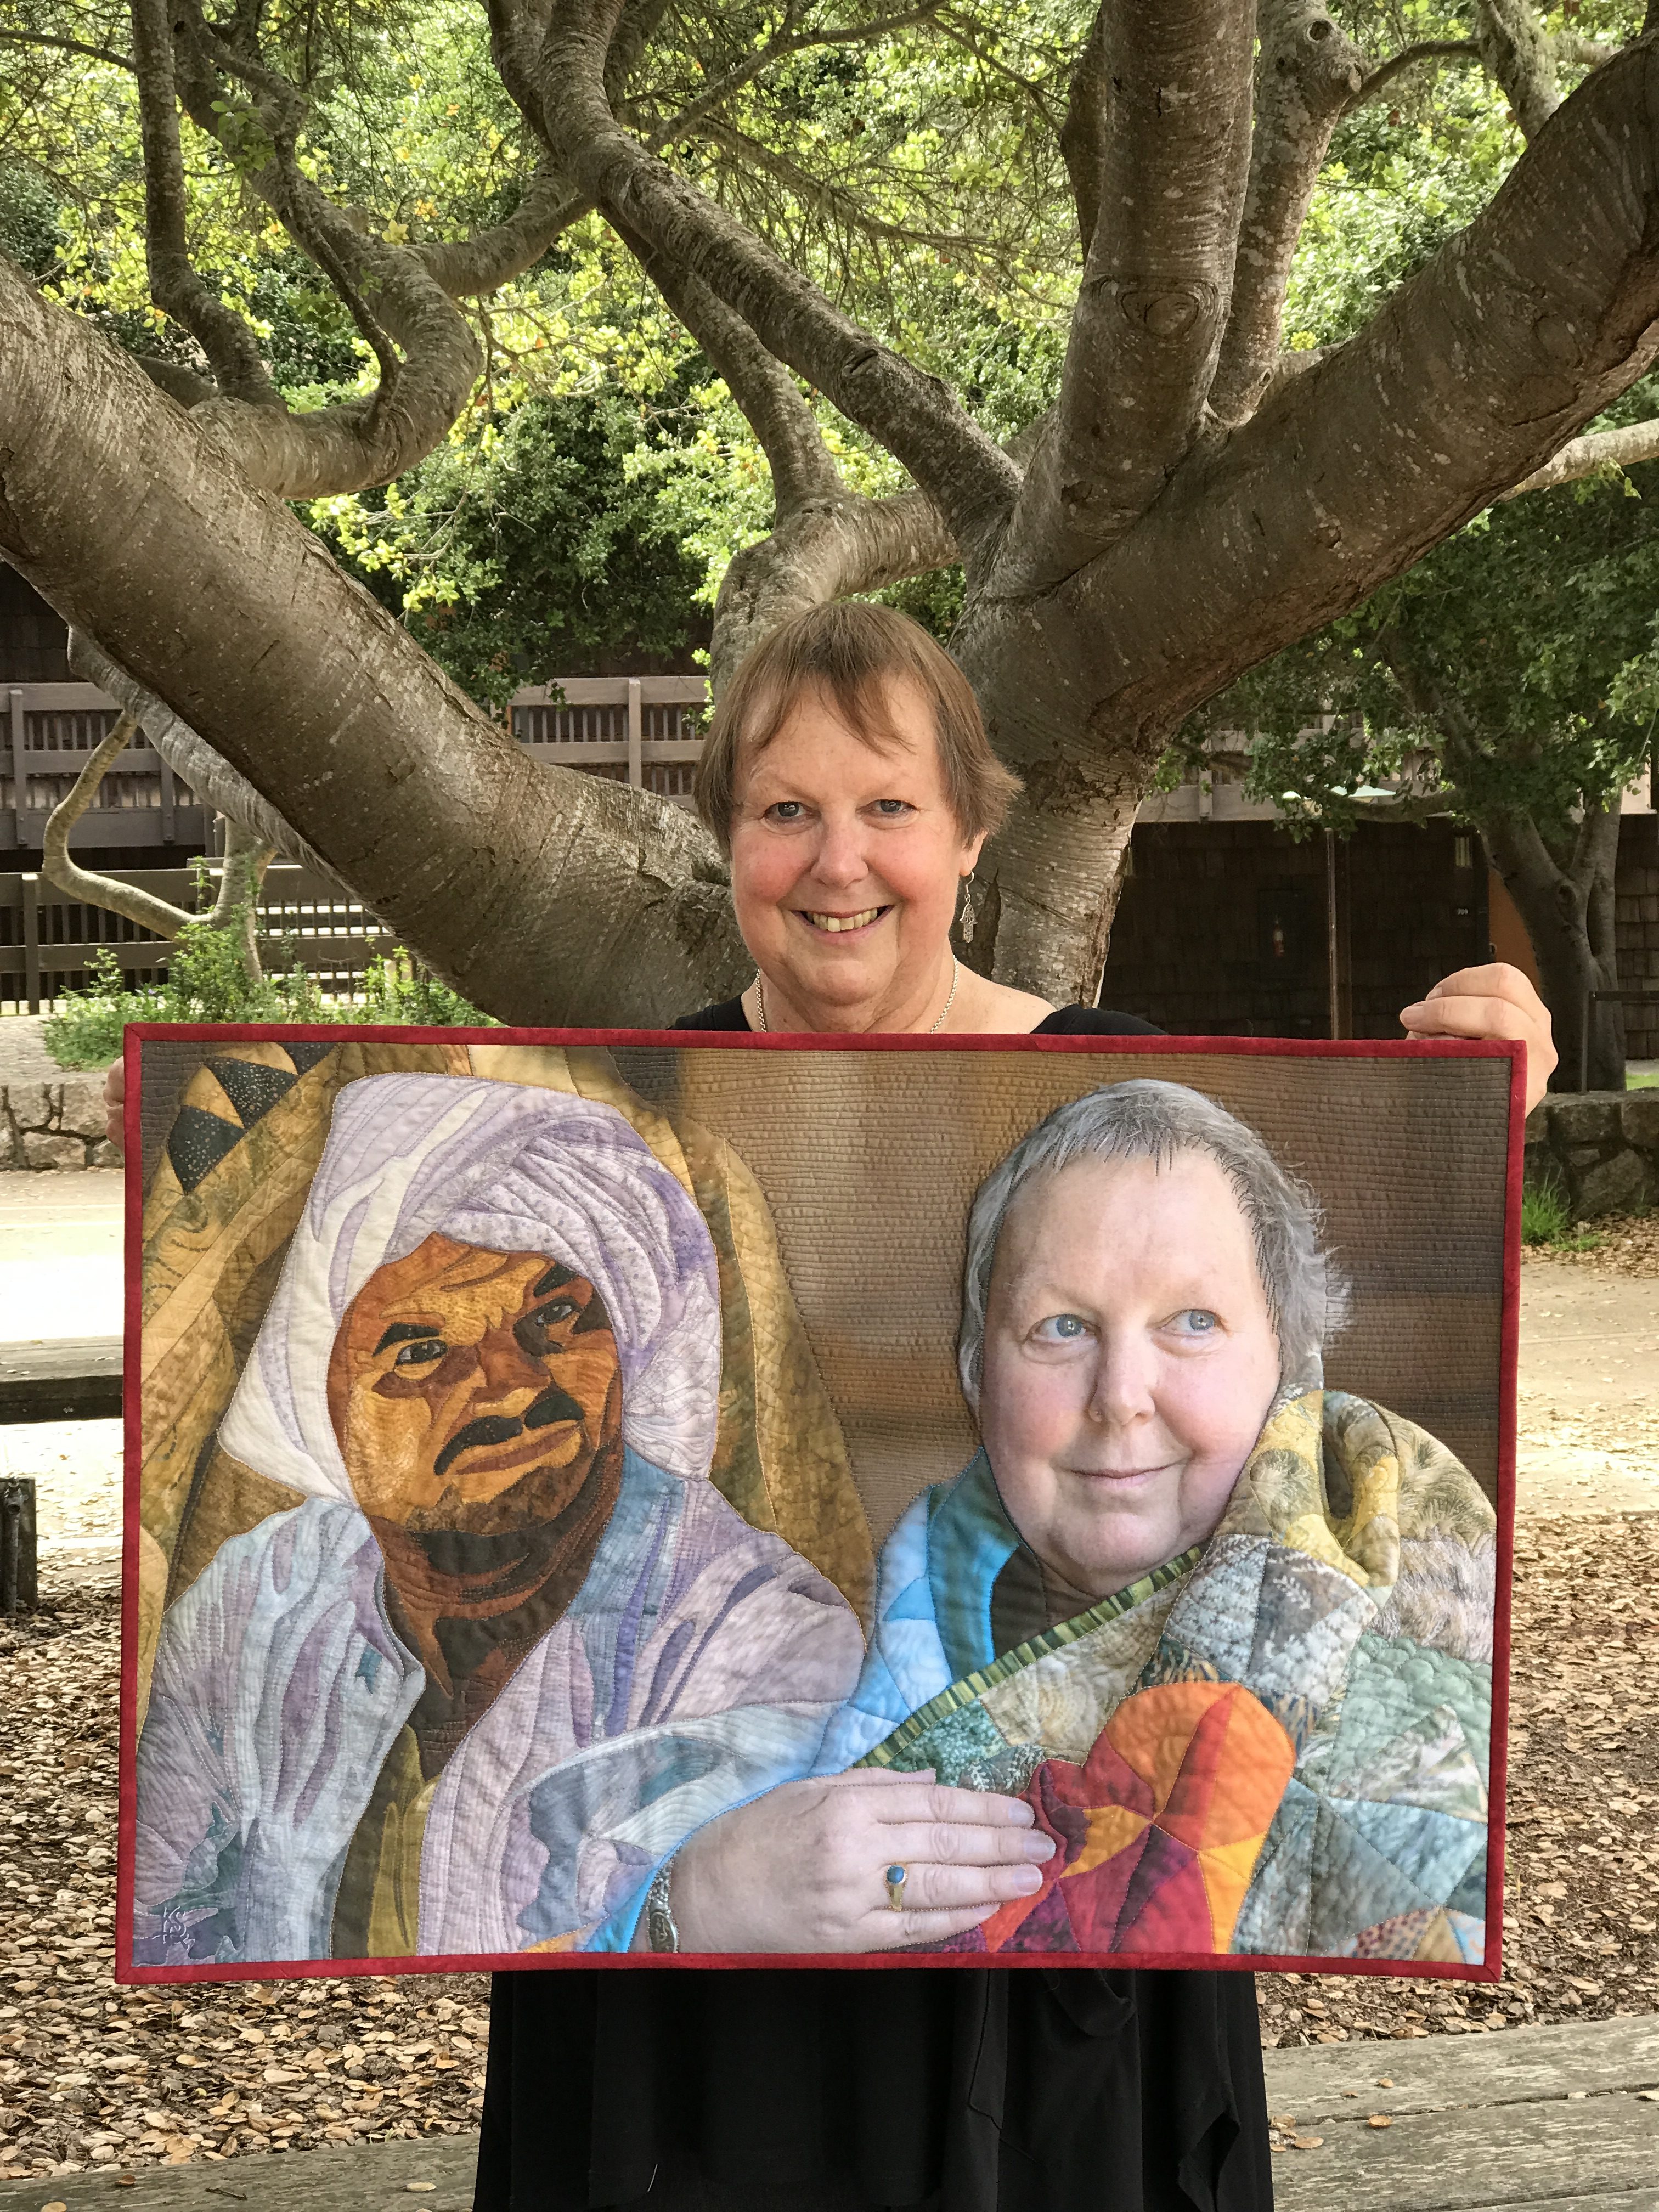 Australian quilt artist and teacher Jenny Bowker